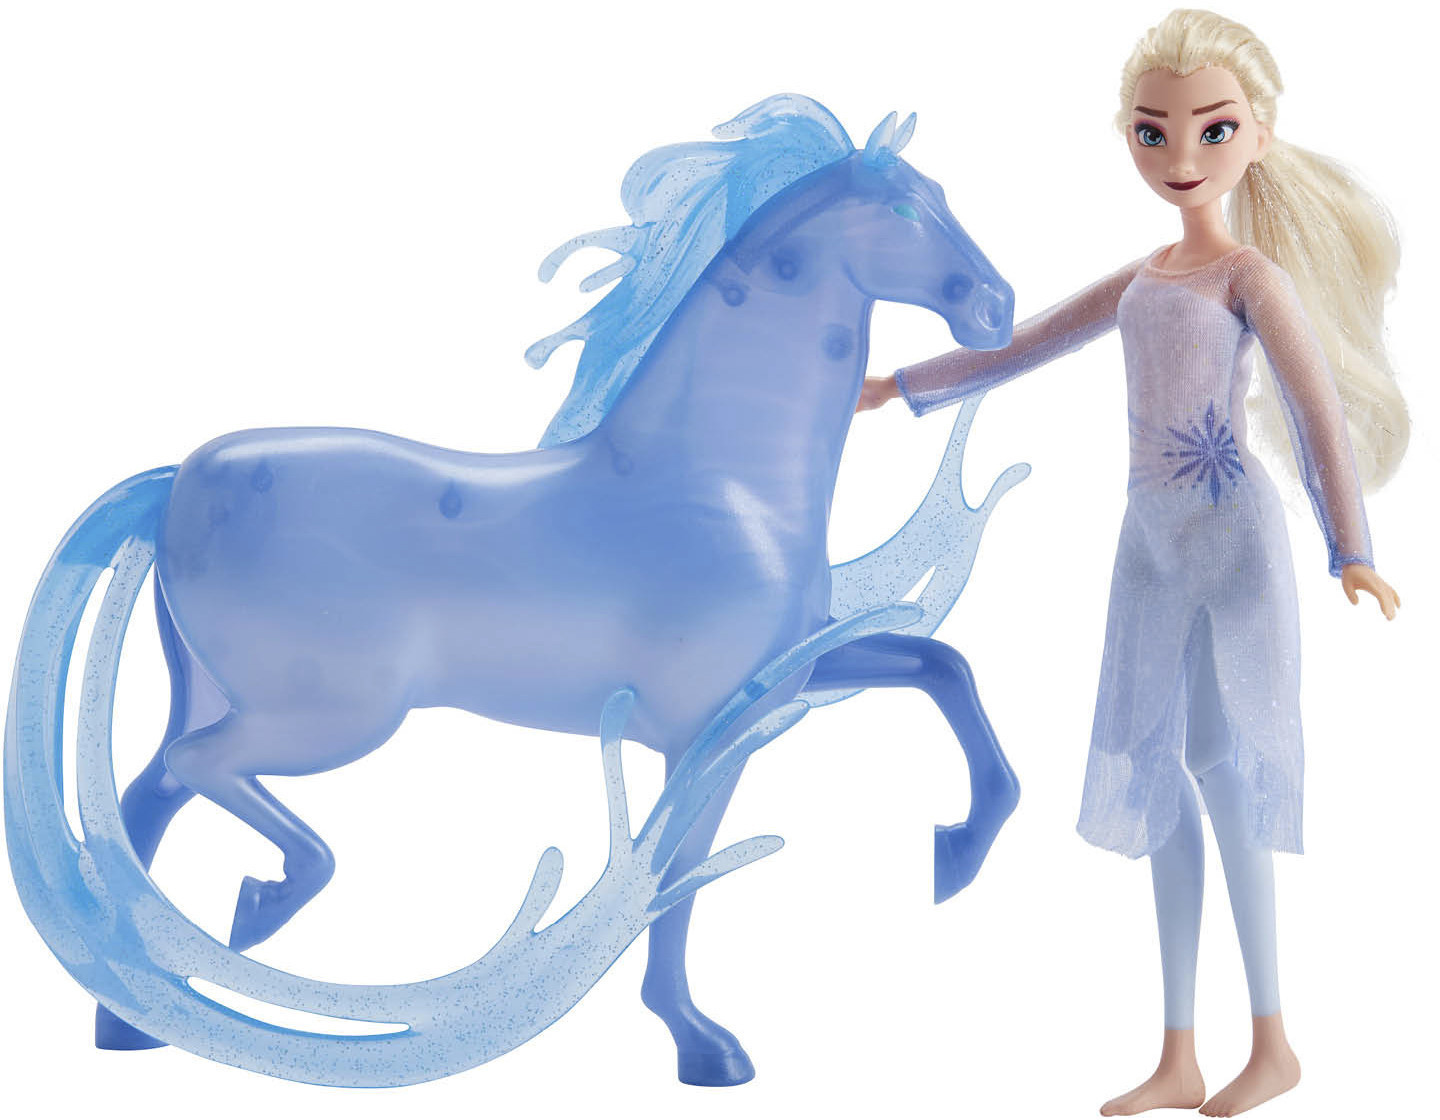 ELSA & NOKK coffret poupée DISNEY cheval la reine des neiges